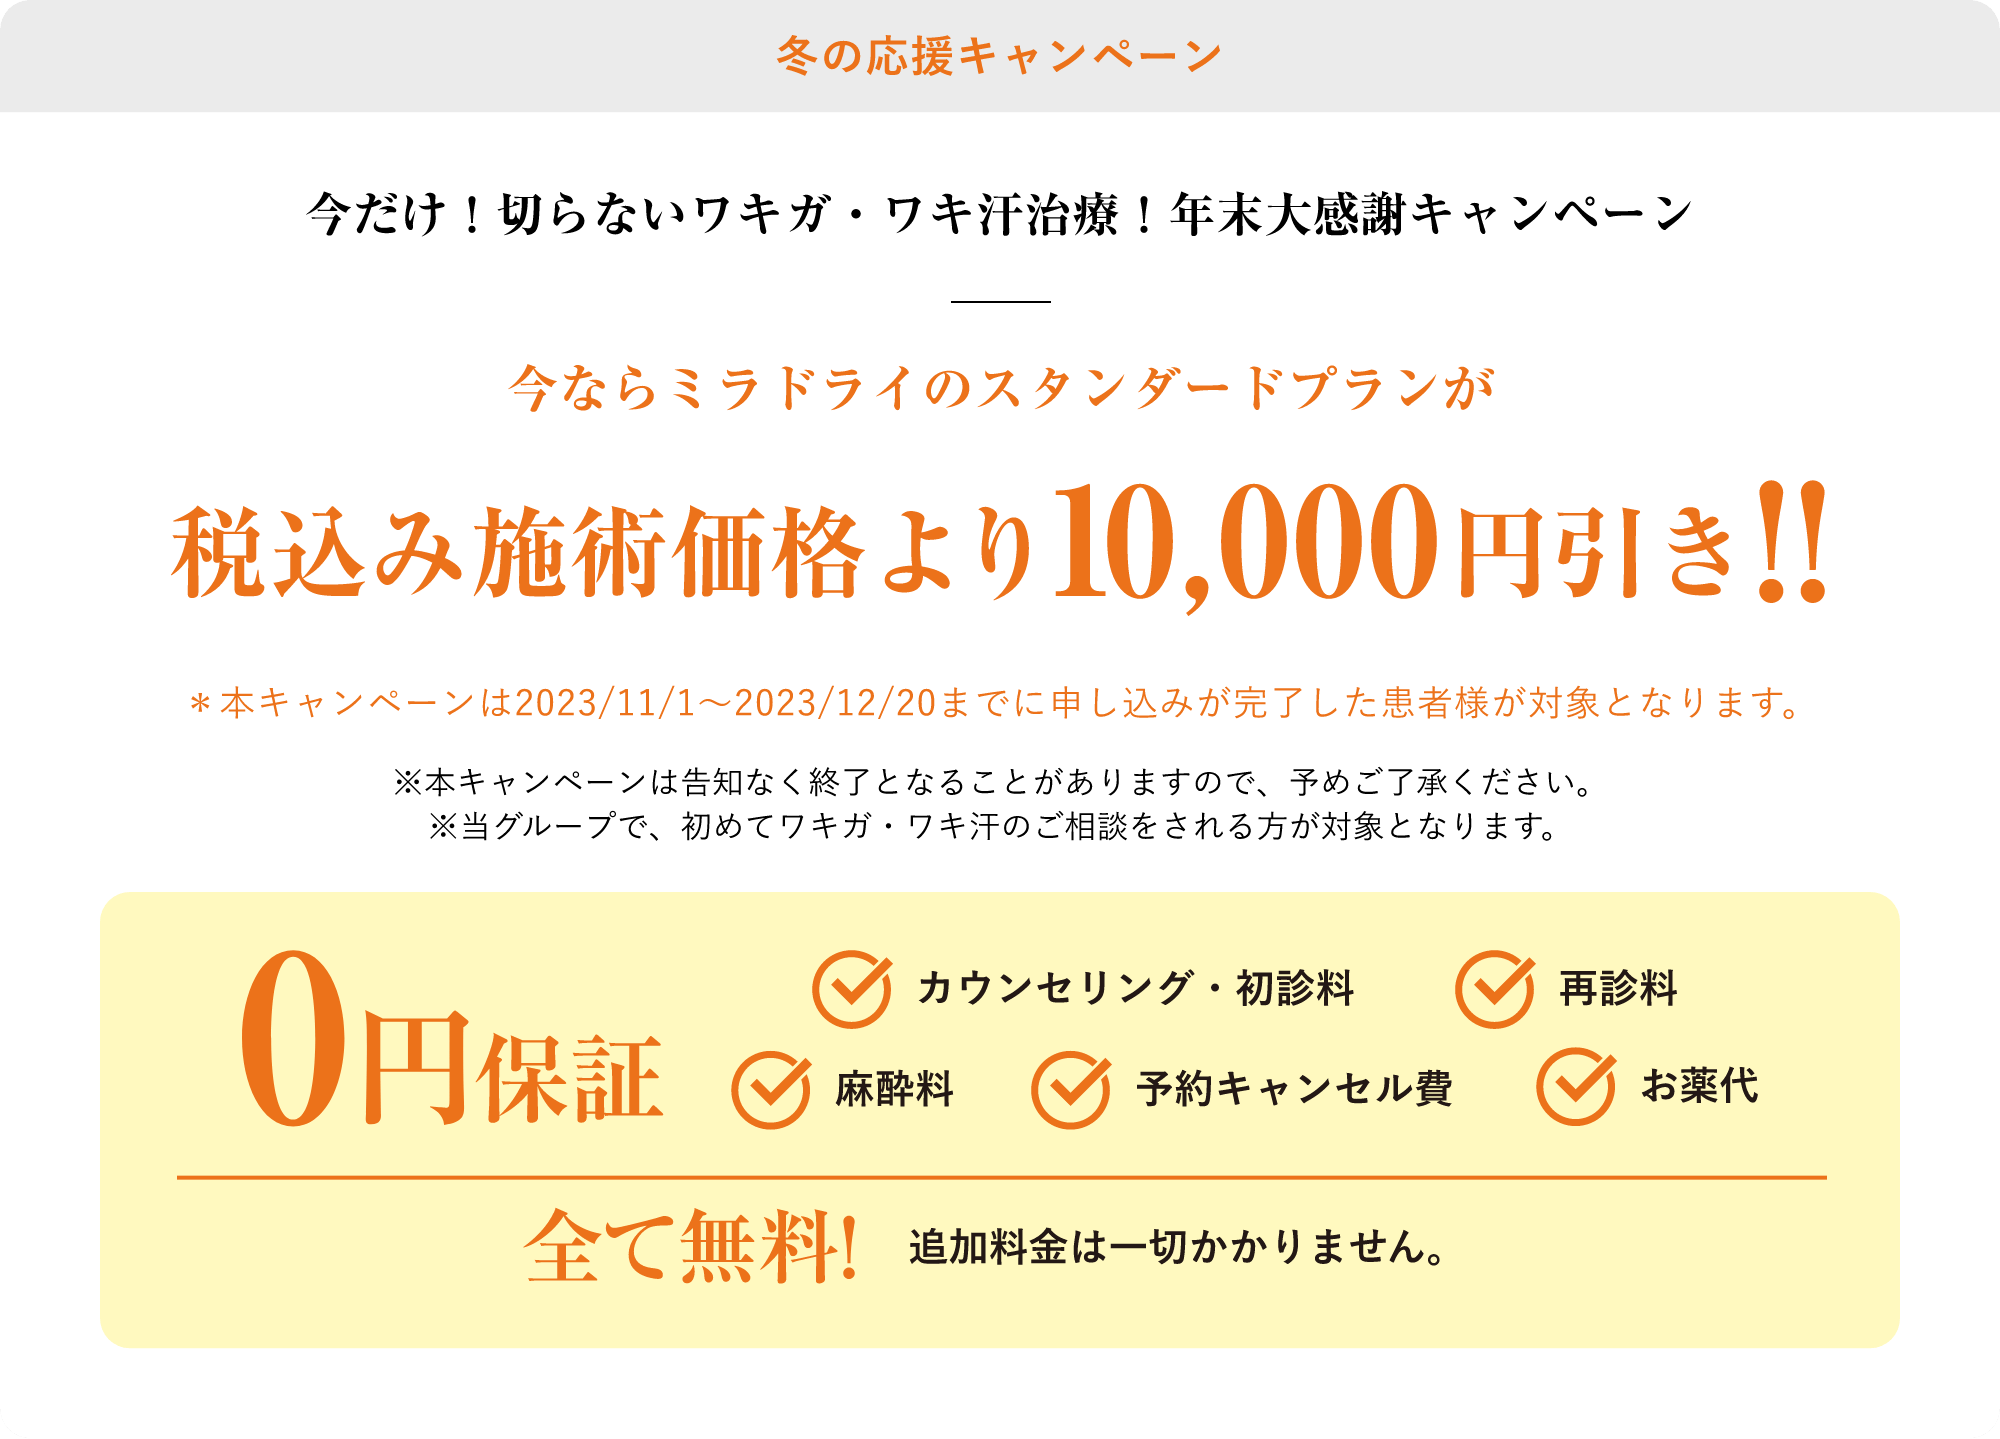 冬の応援キャンペーン今ならミラドライのスタンダードプランが税込み施術価格より10,000円引き!!